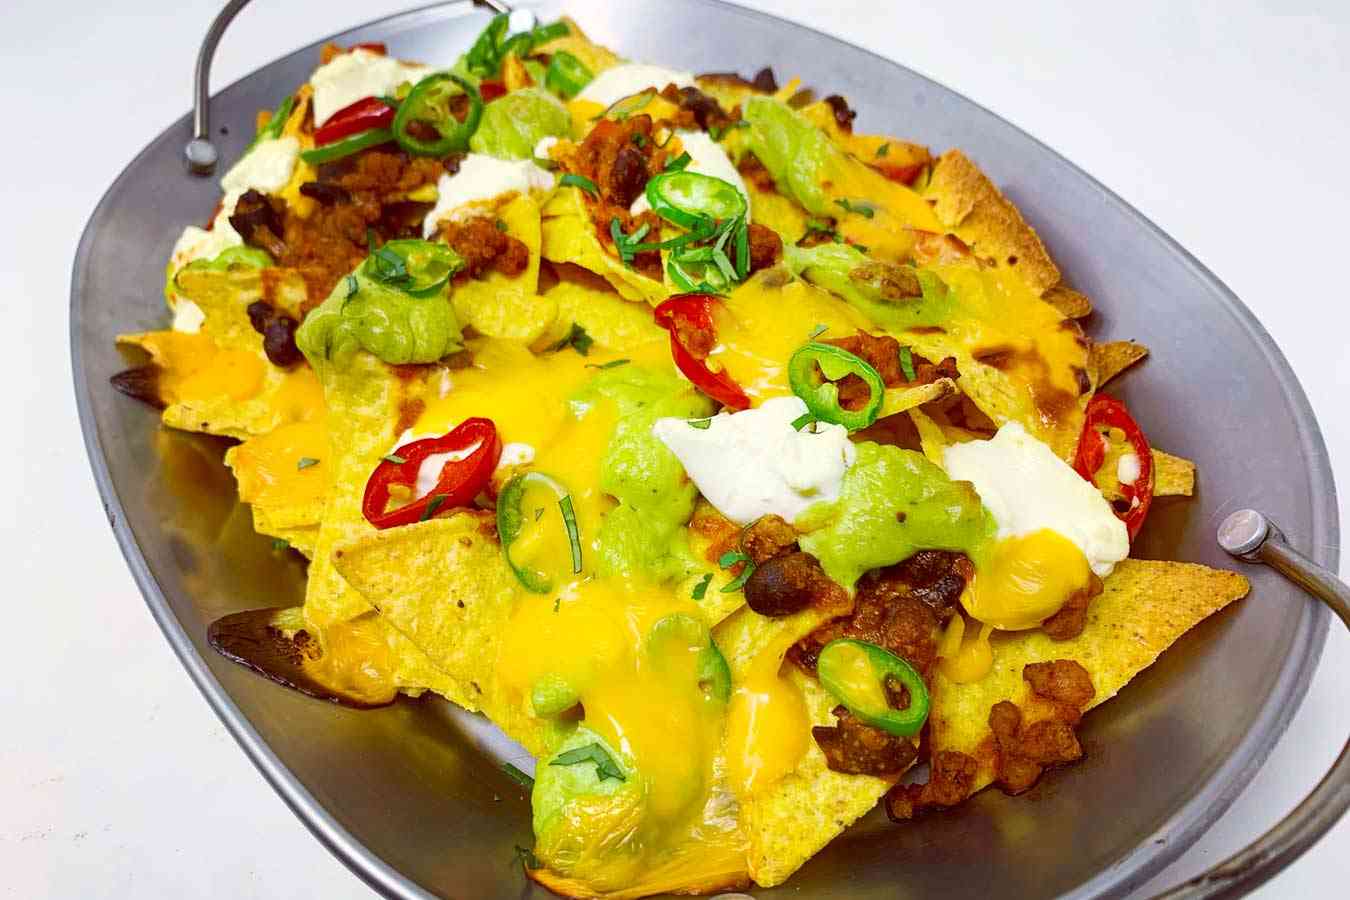 Ricetta loaded nachos con chili, guacamole e formaggio - La ricetta ...